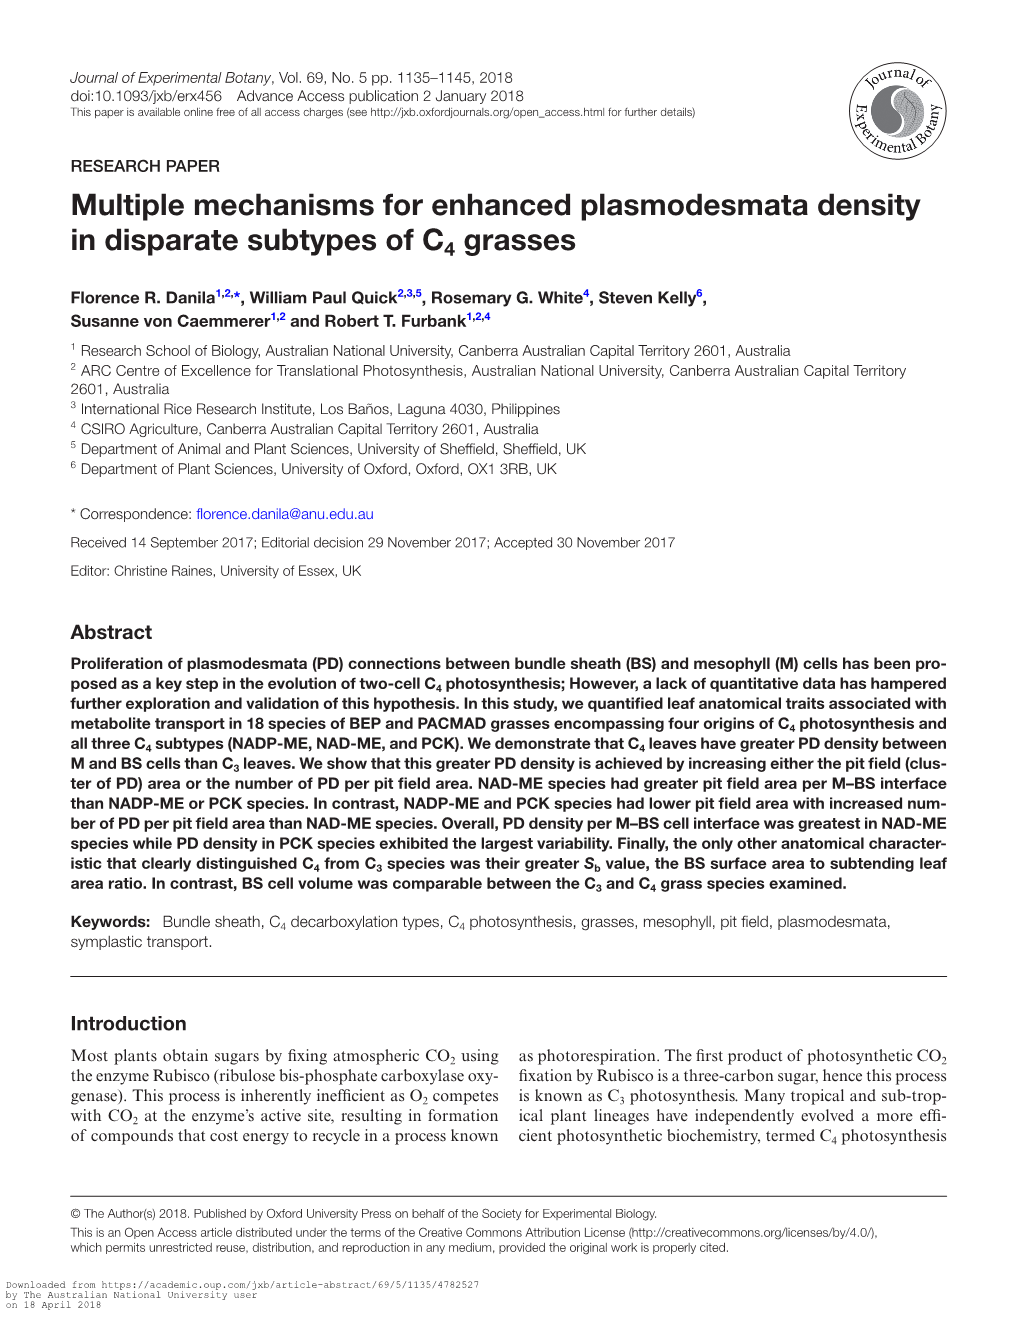 Multiple Mechanisms for Enhanced Plasmodesmata Density in Disparate Subtypes of C4 Grasses